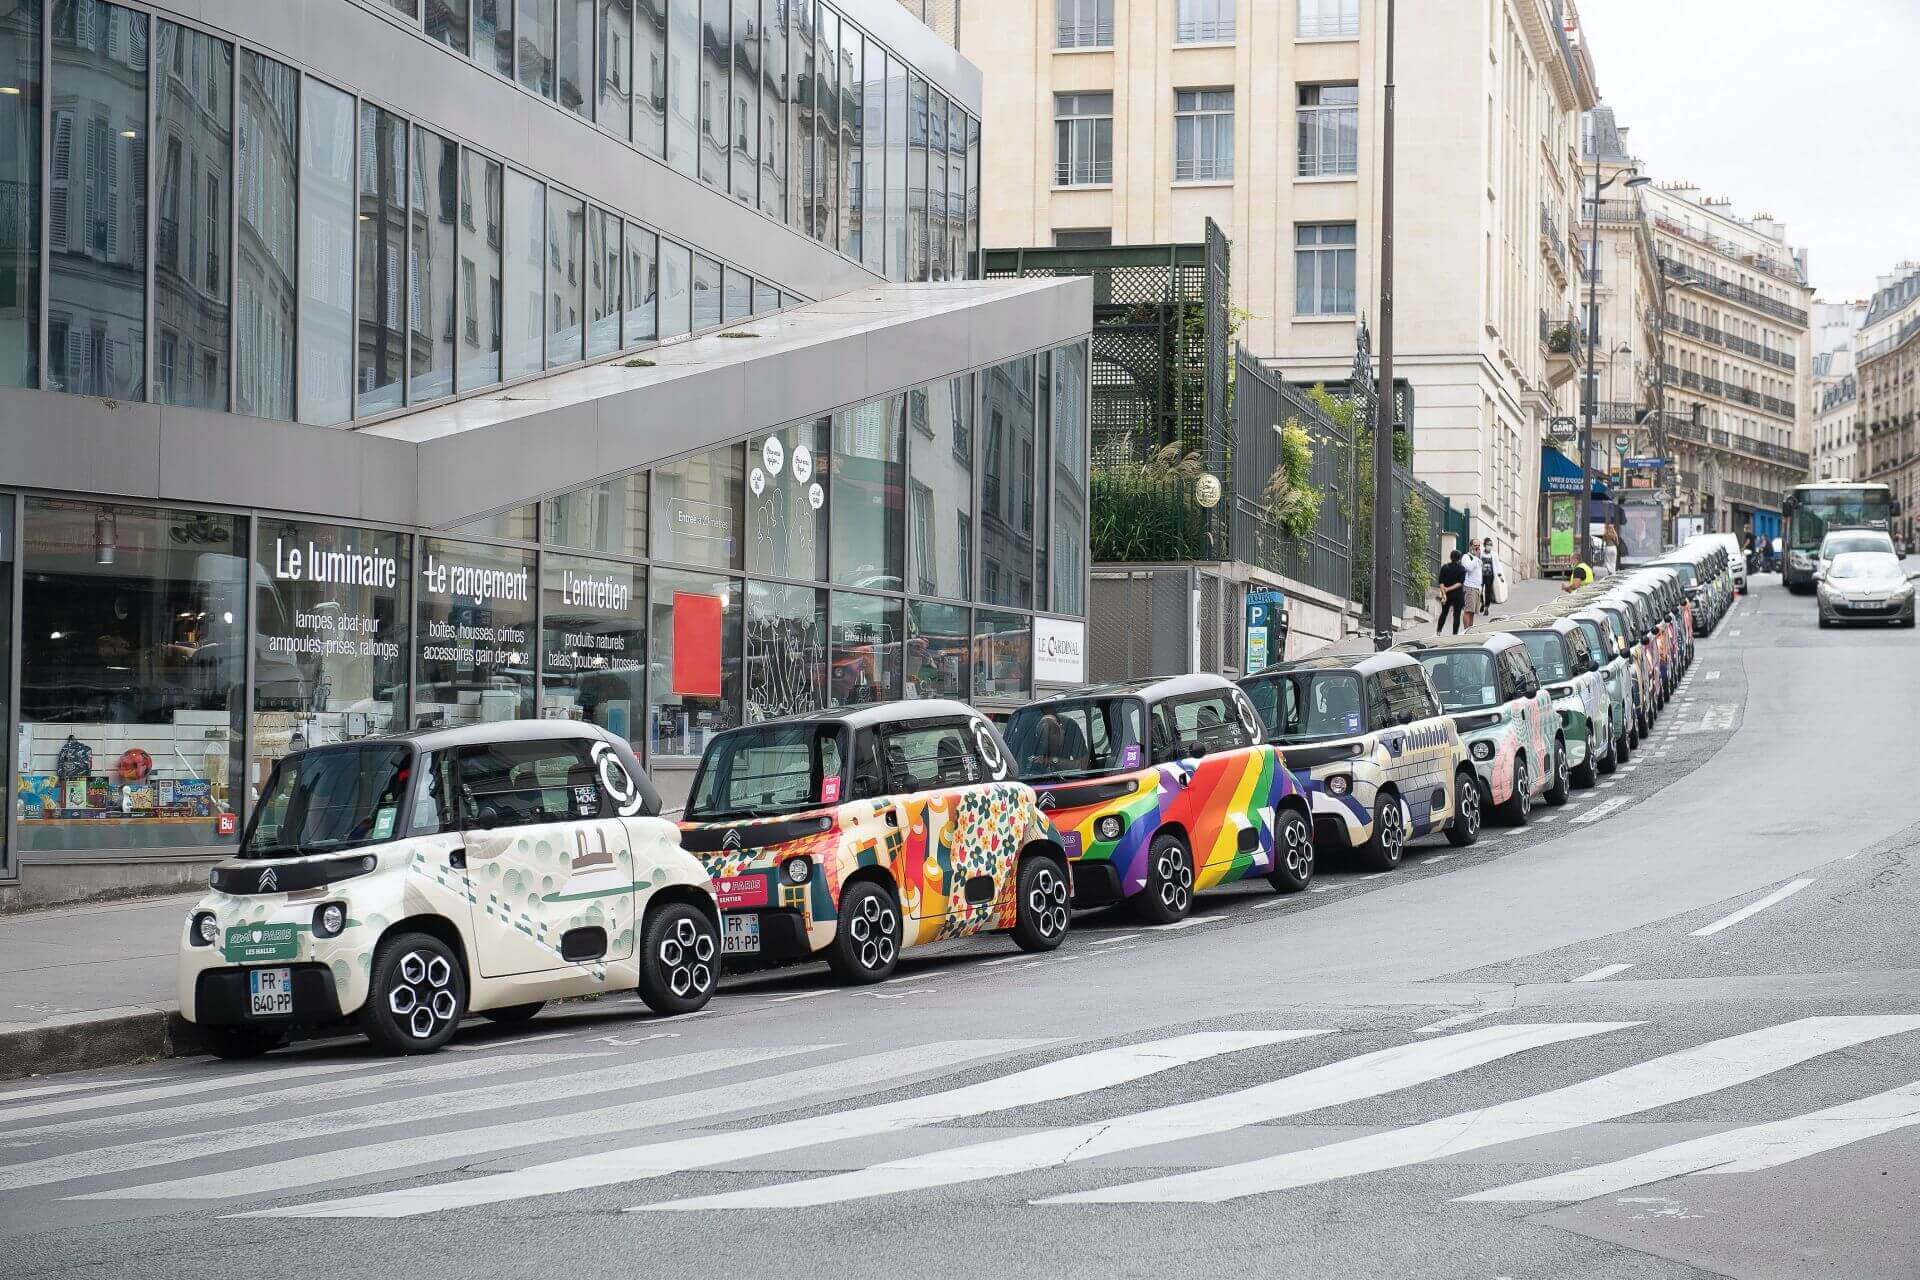 Крошечный Citroën Ami пополнил парк автомобилей Free2Move в Париже, представив 20 нестандартных раскрасок кузова